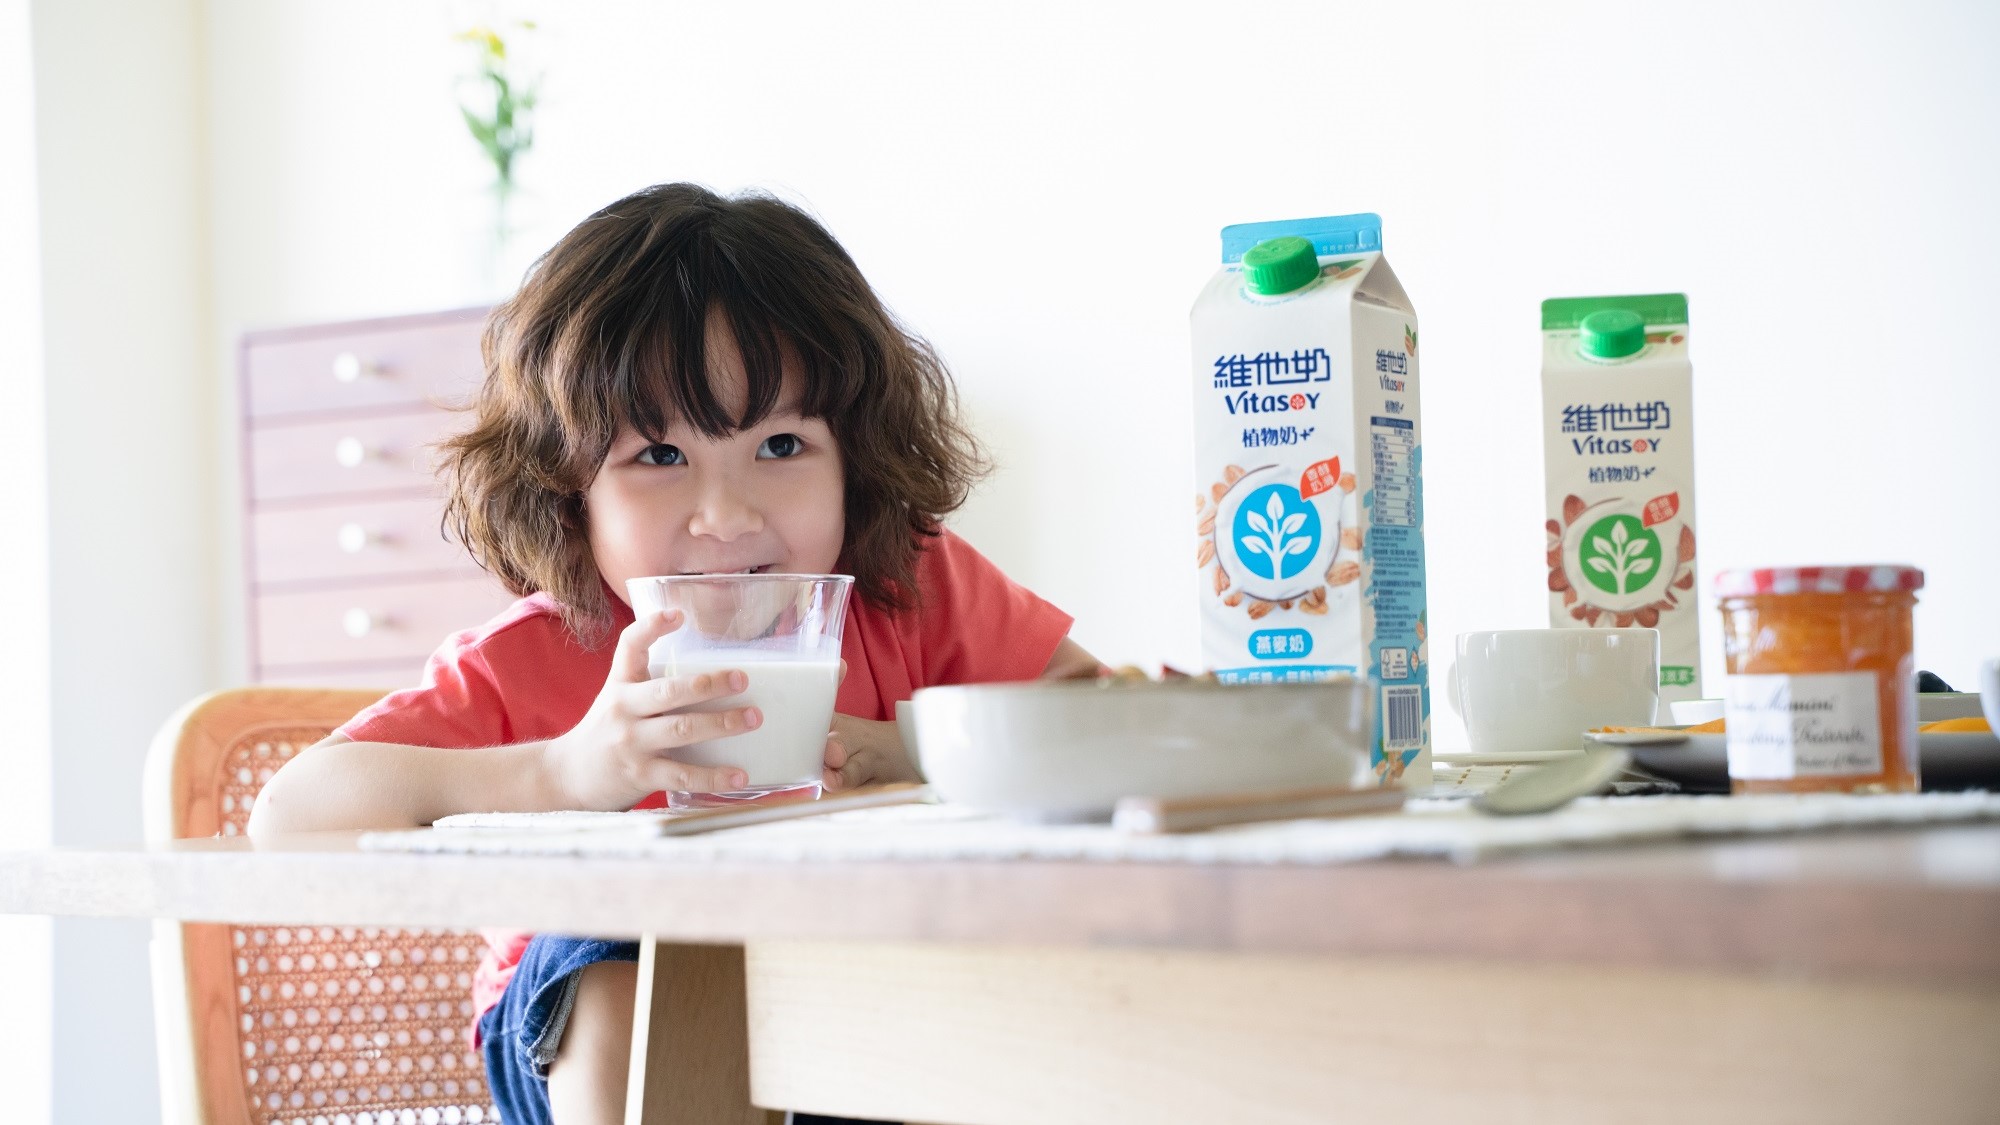 【購物】維他奶推出新植物奶